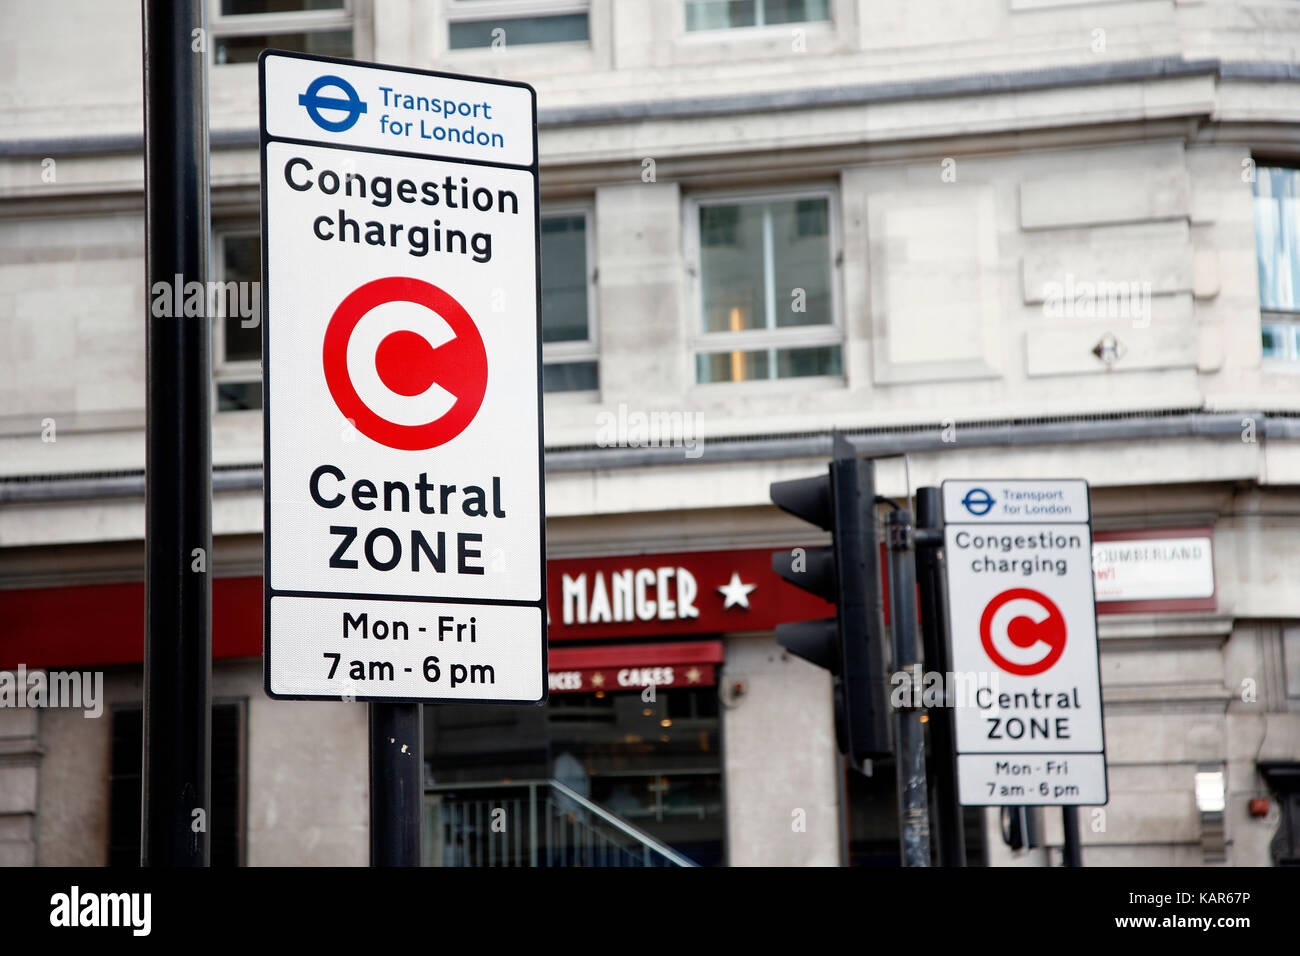 Congestion Charge Zone segno, introdotto 2003 per ridurre la congestione nel centro di Londra. il costo standard è 11,50 per ogni giorno dal lunedì al venerdì solo. Foto Stock